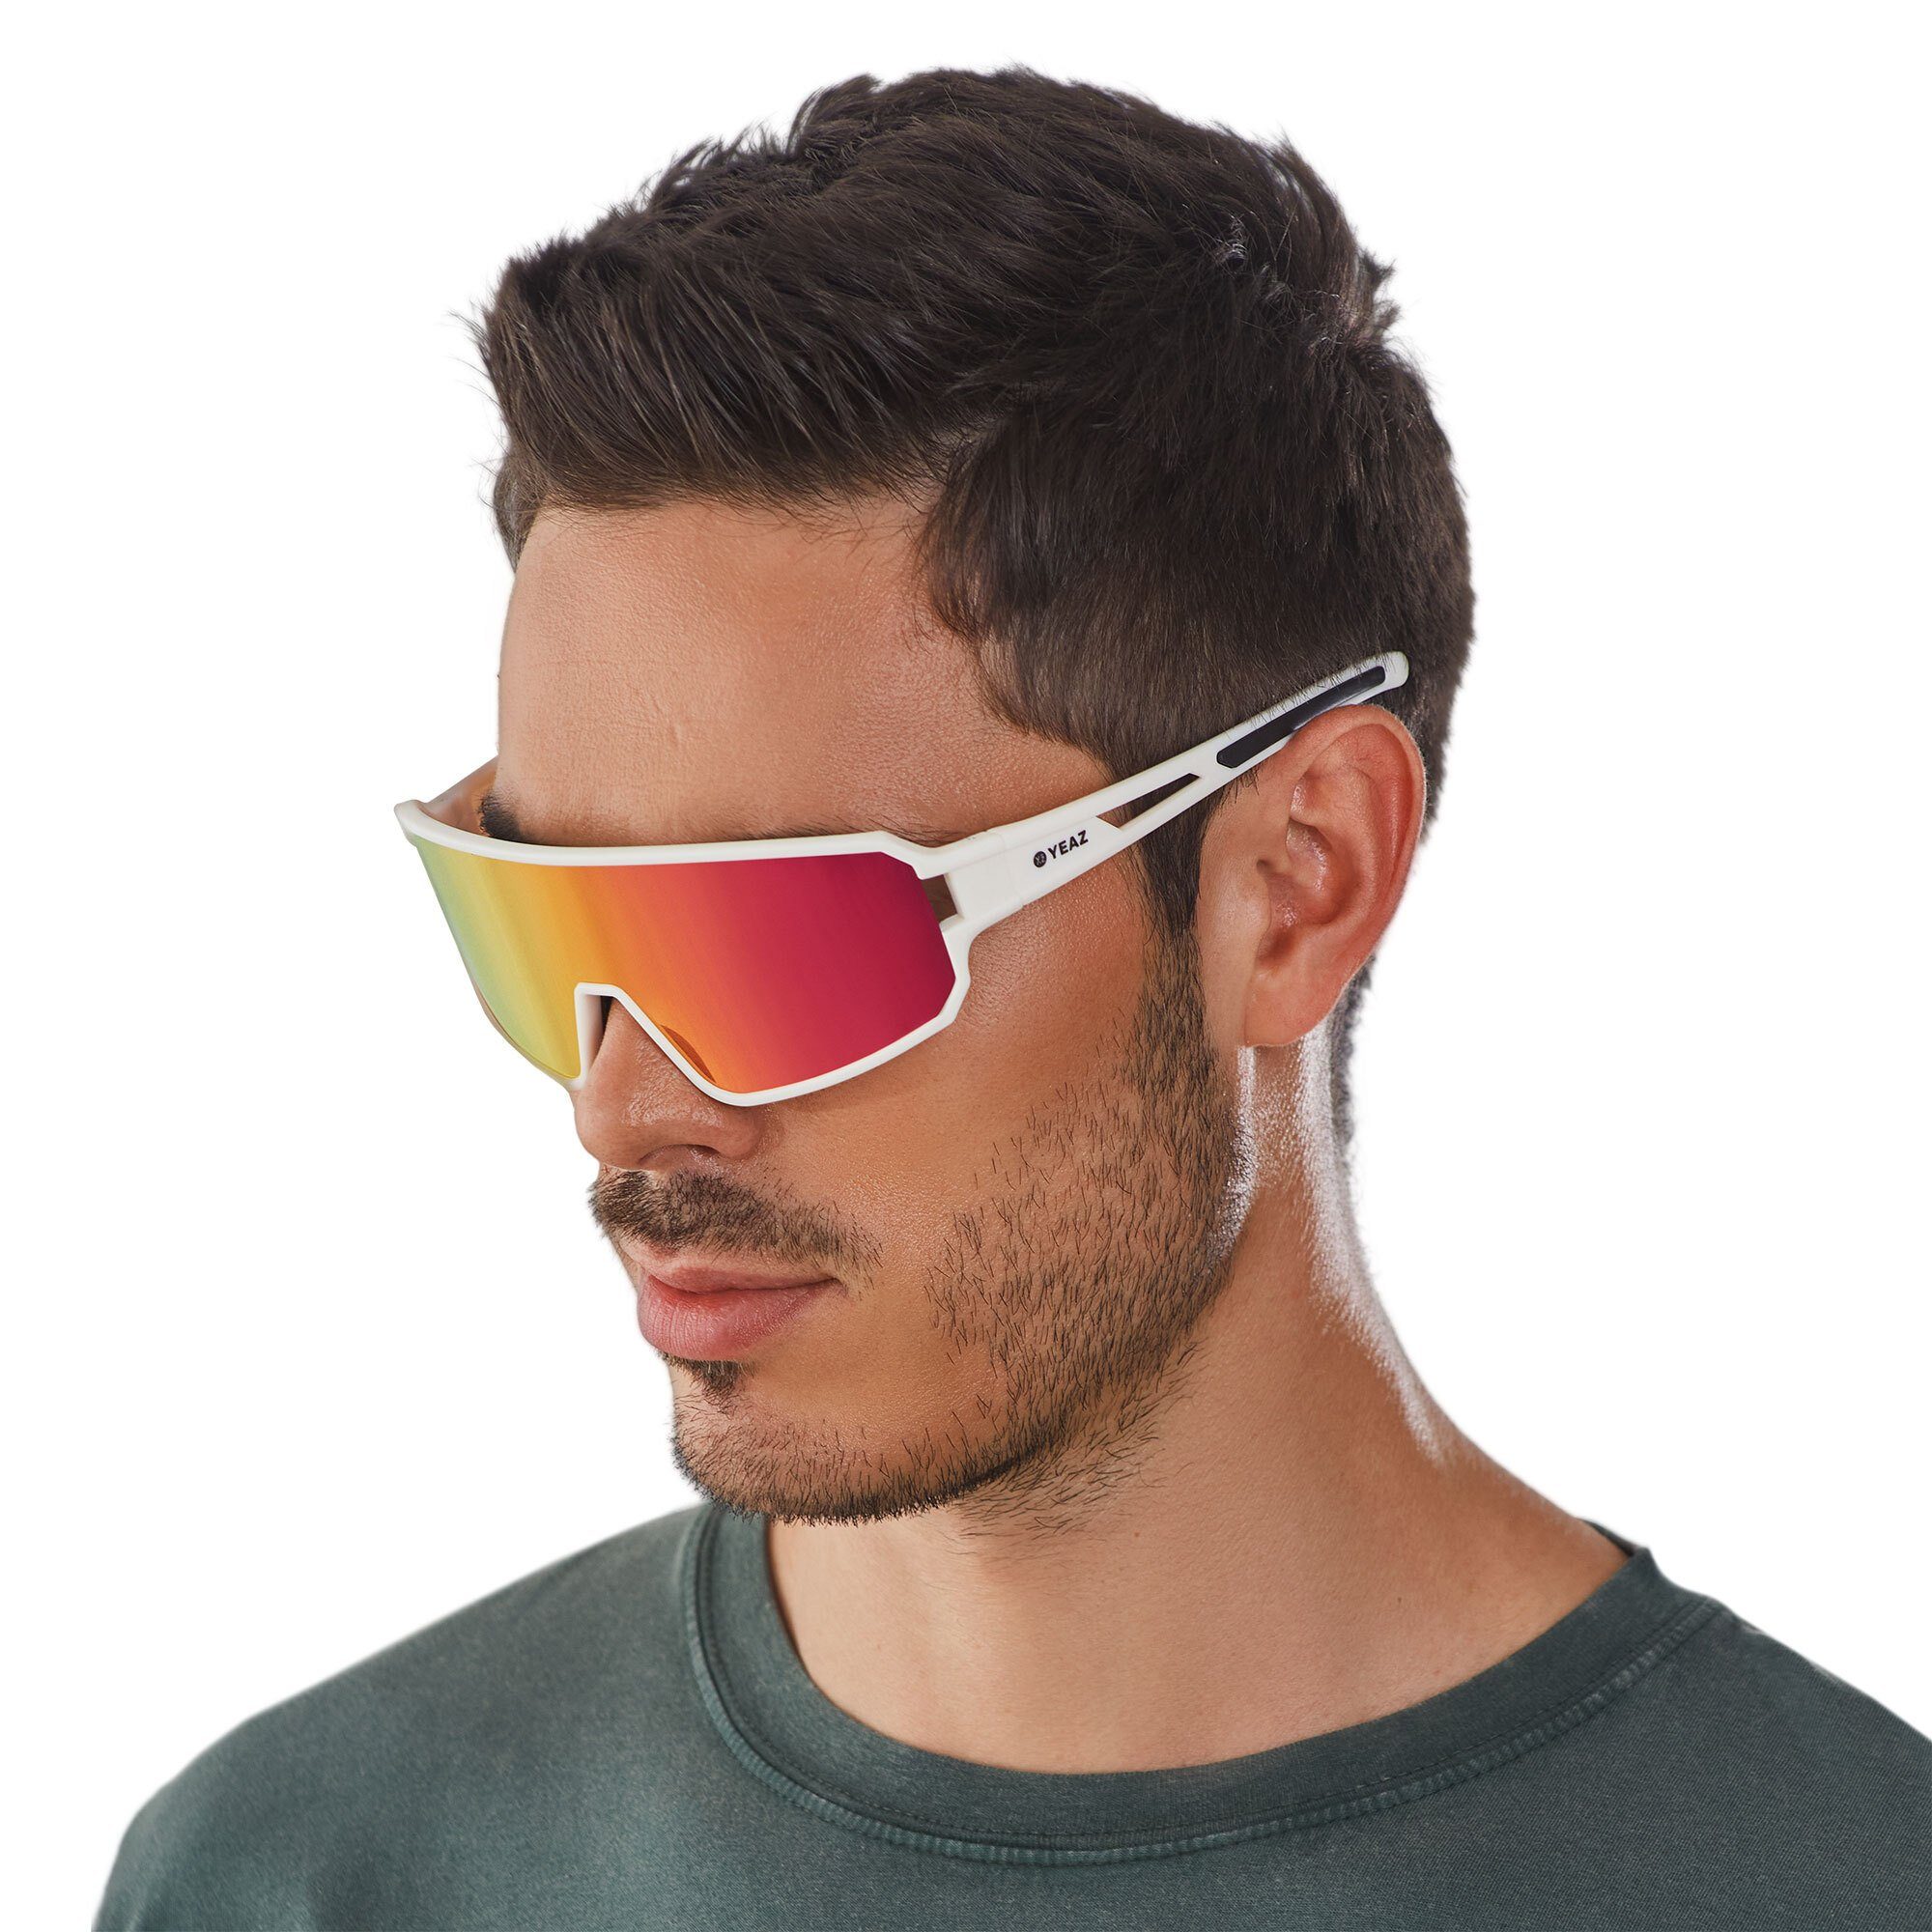 YEAZ Sportbrille SUNWAVE sport-sonnenbrille creme white/pink, Guter Schutz bei optimierter Sicht